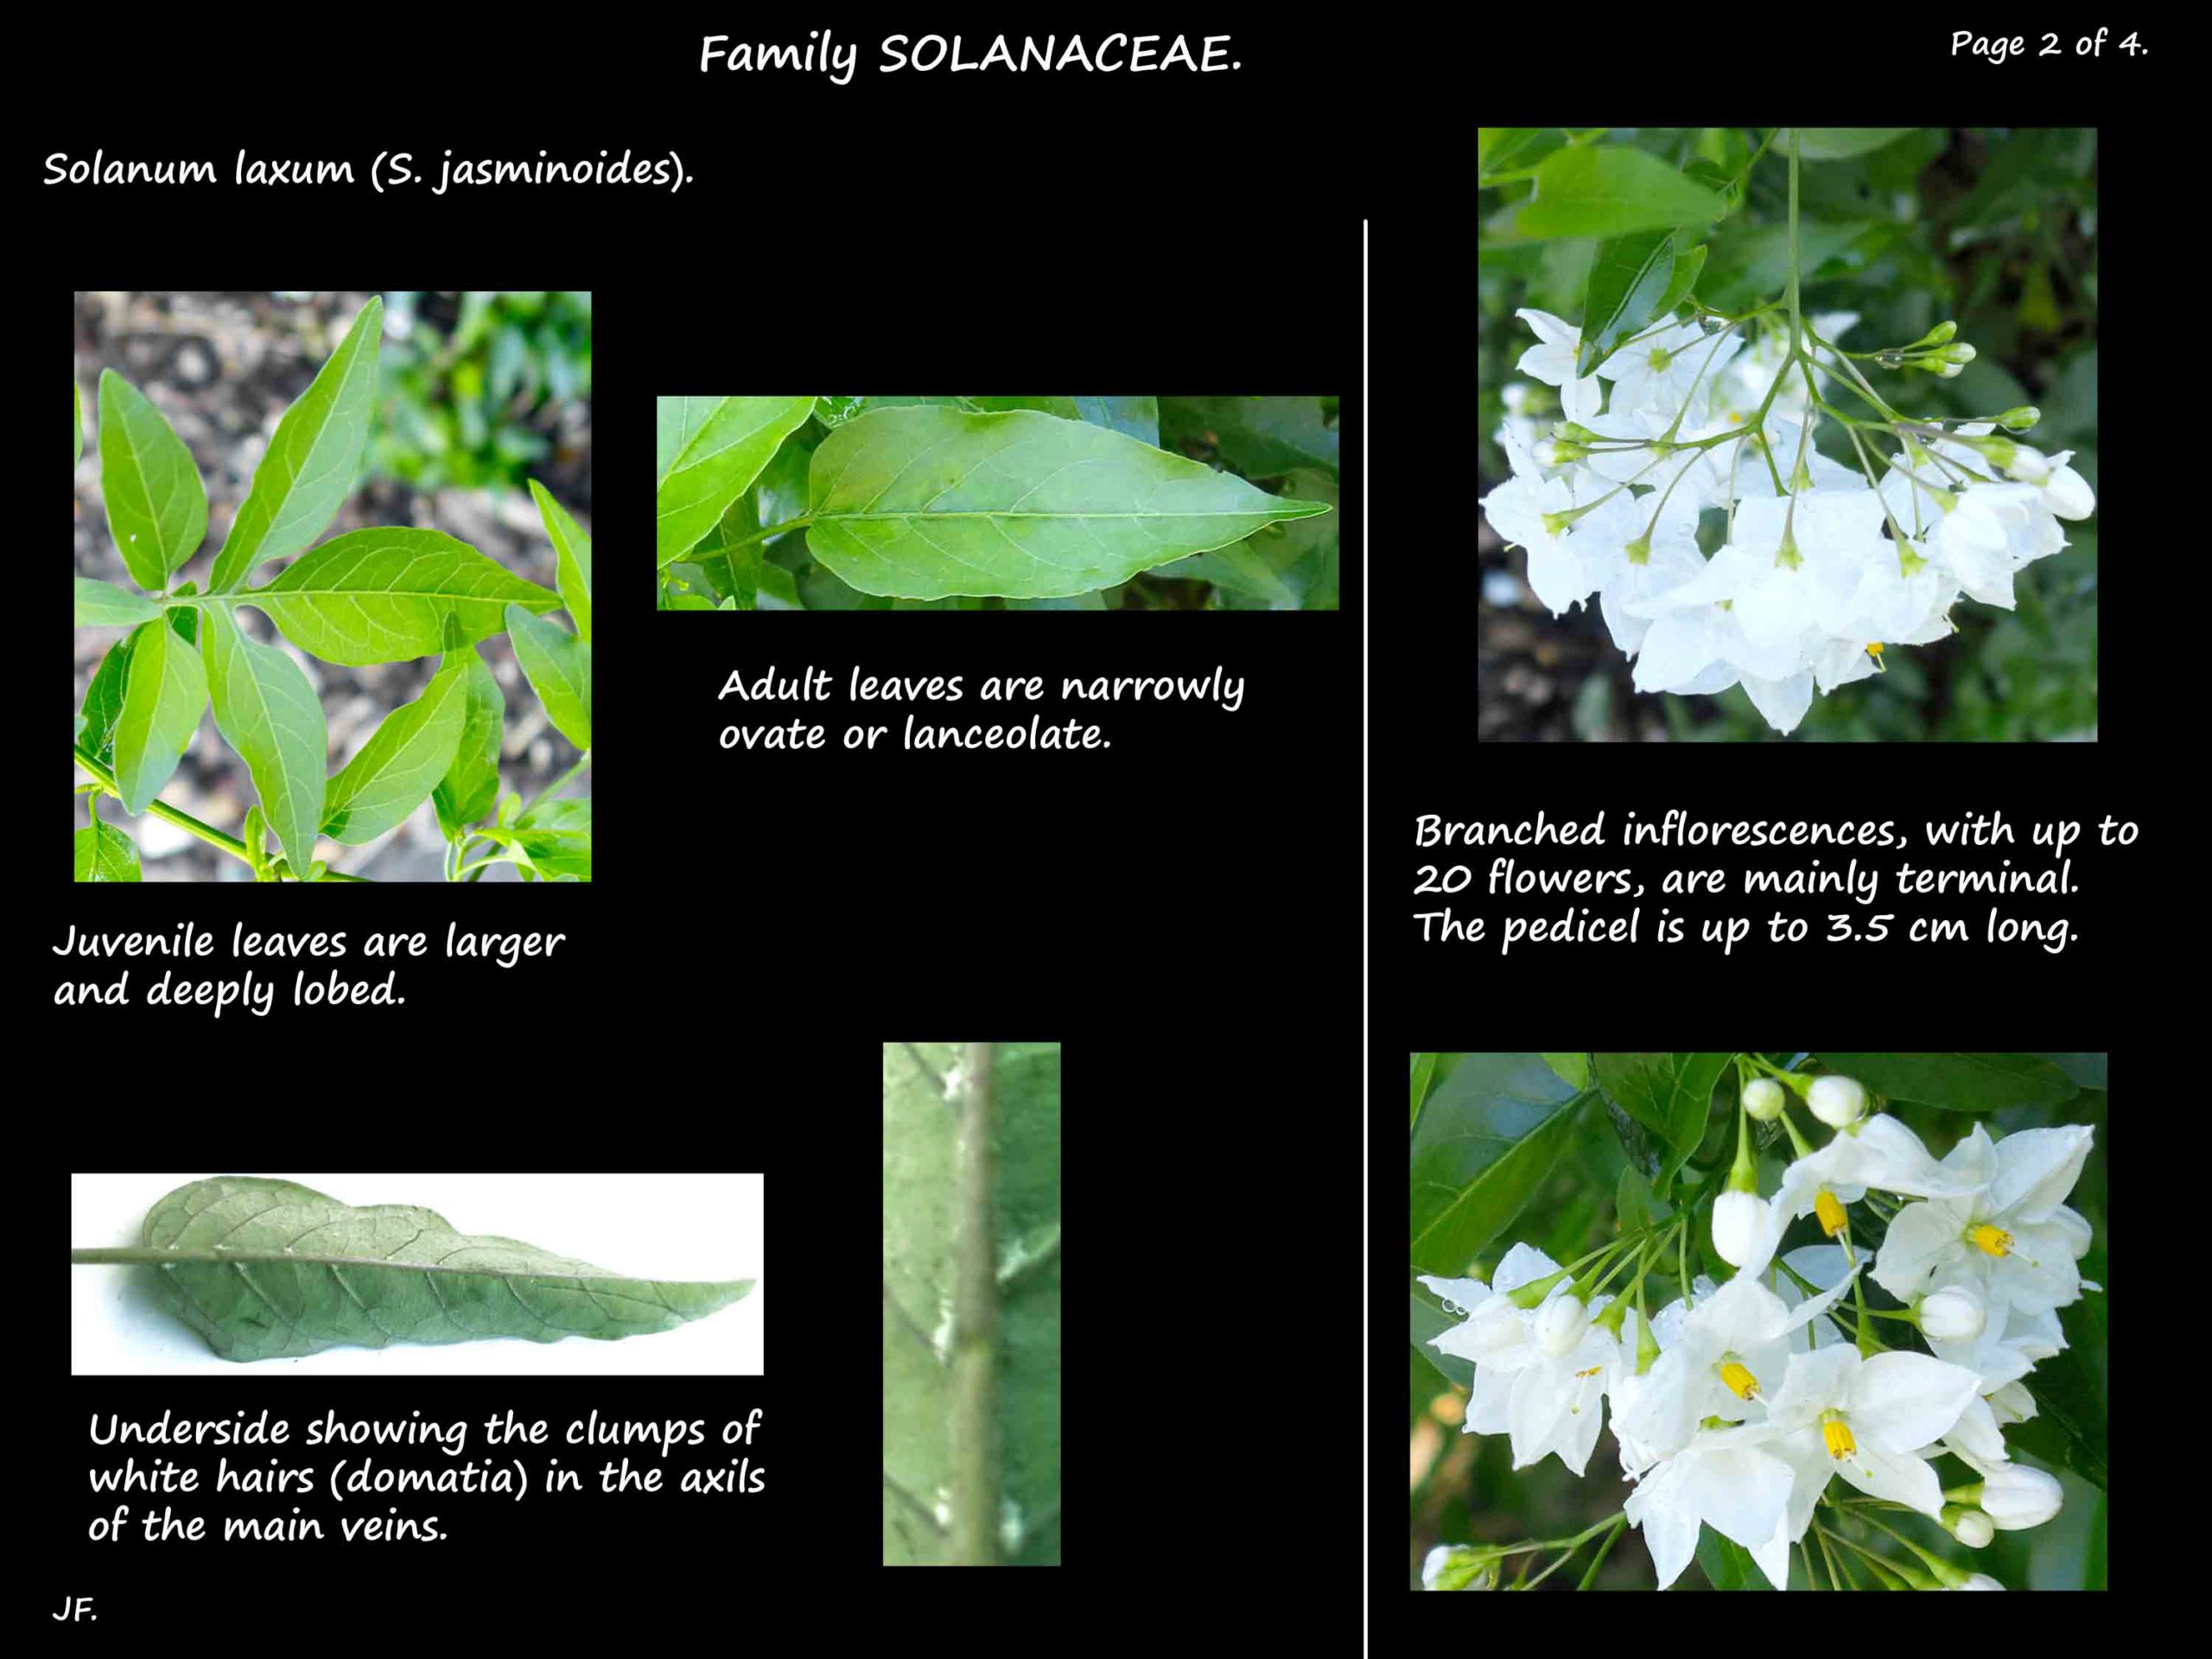 2 Solanum laxum inflorescences